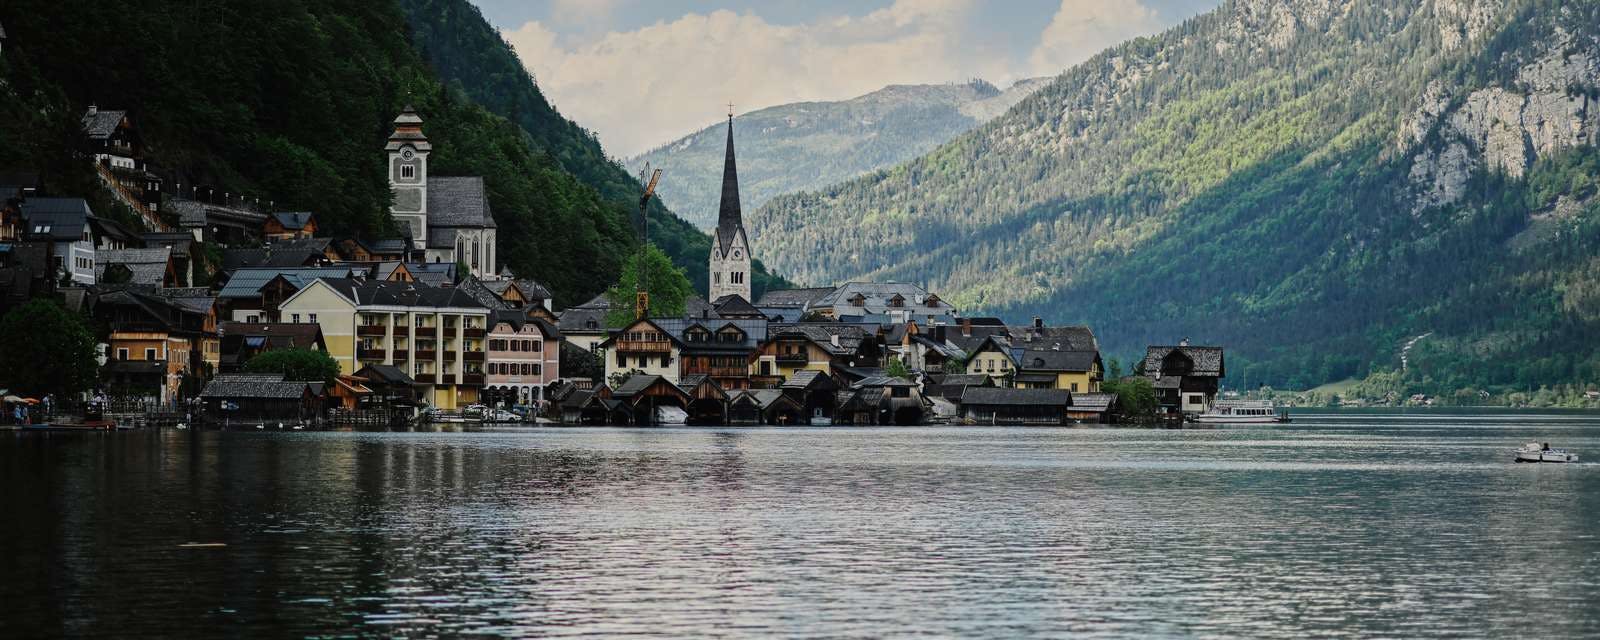 Dorf am See in den Österreichsichen Alpen